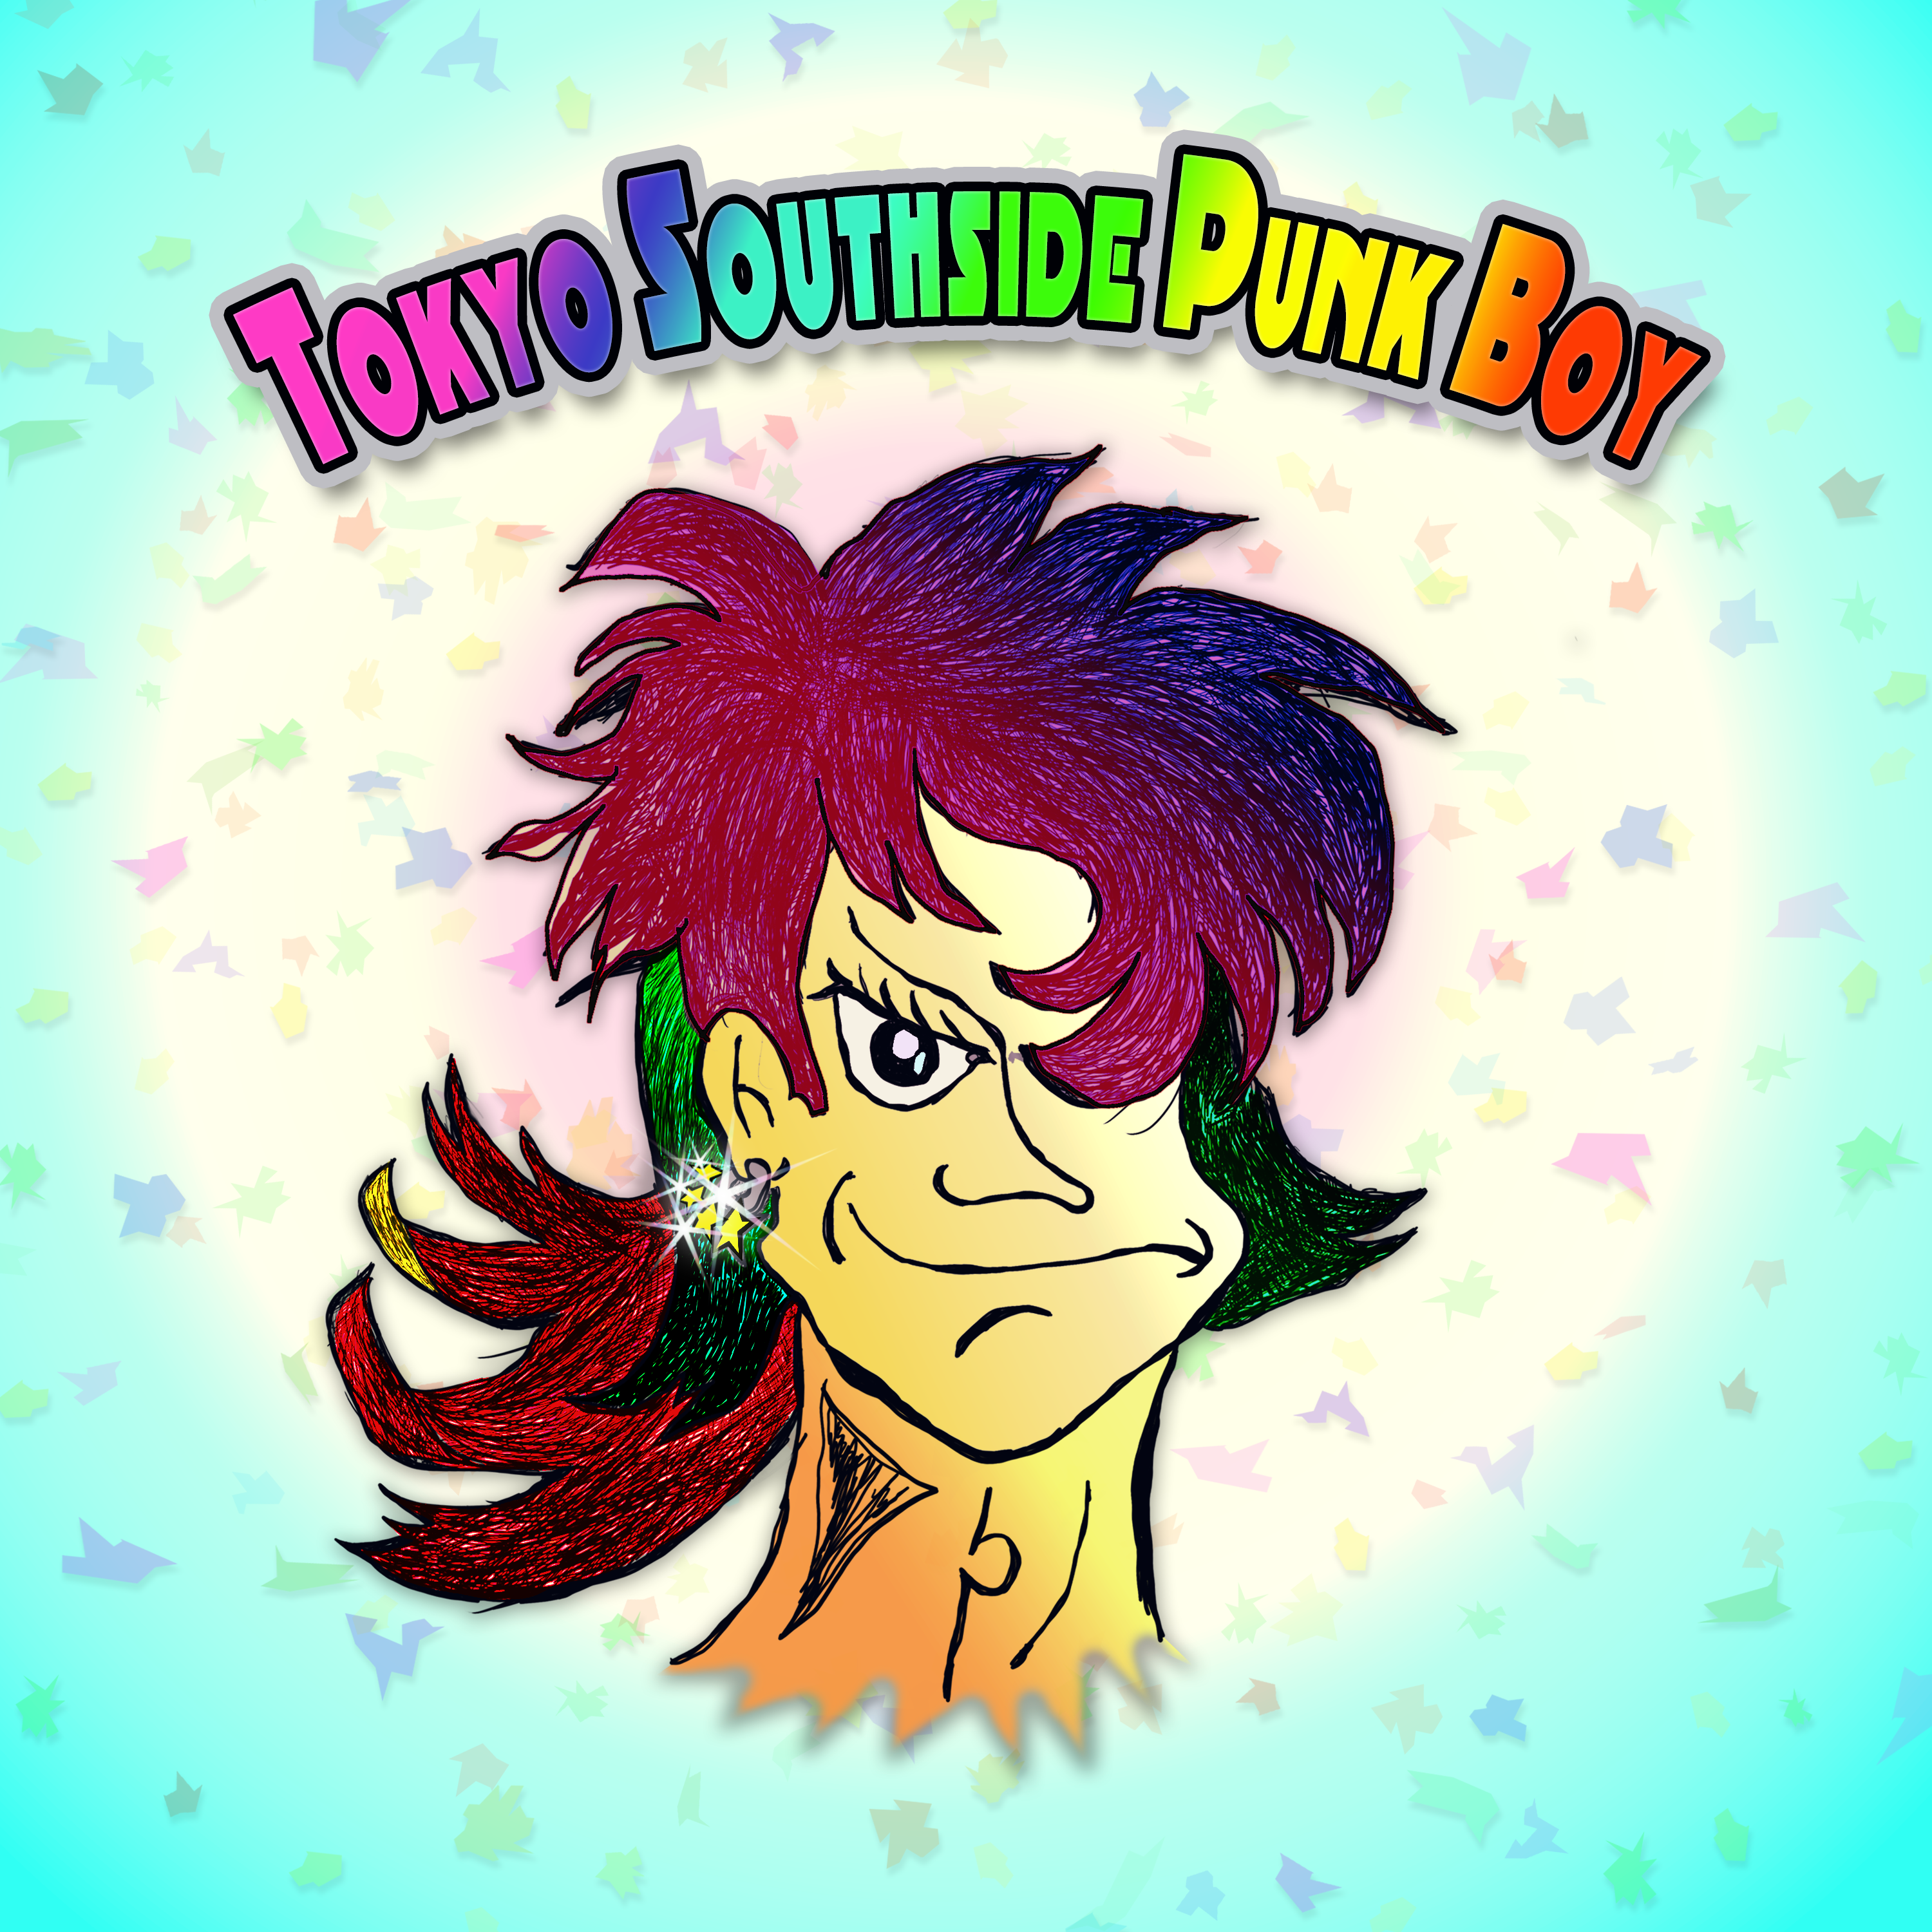 Tokyo Southside Punk Boy_#4